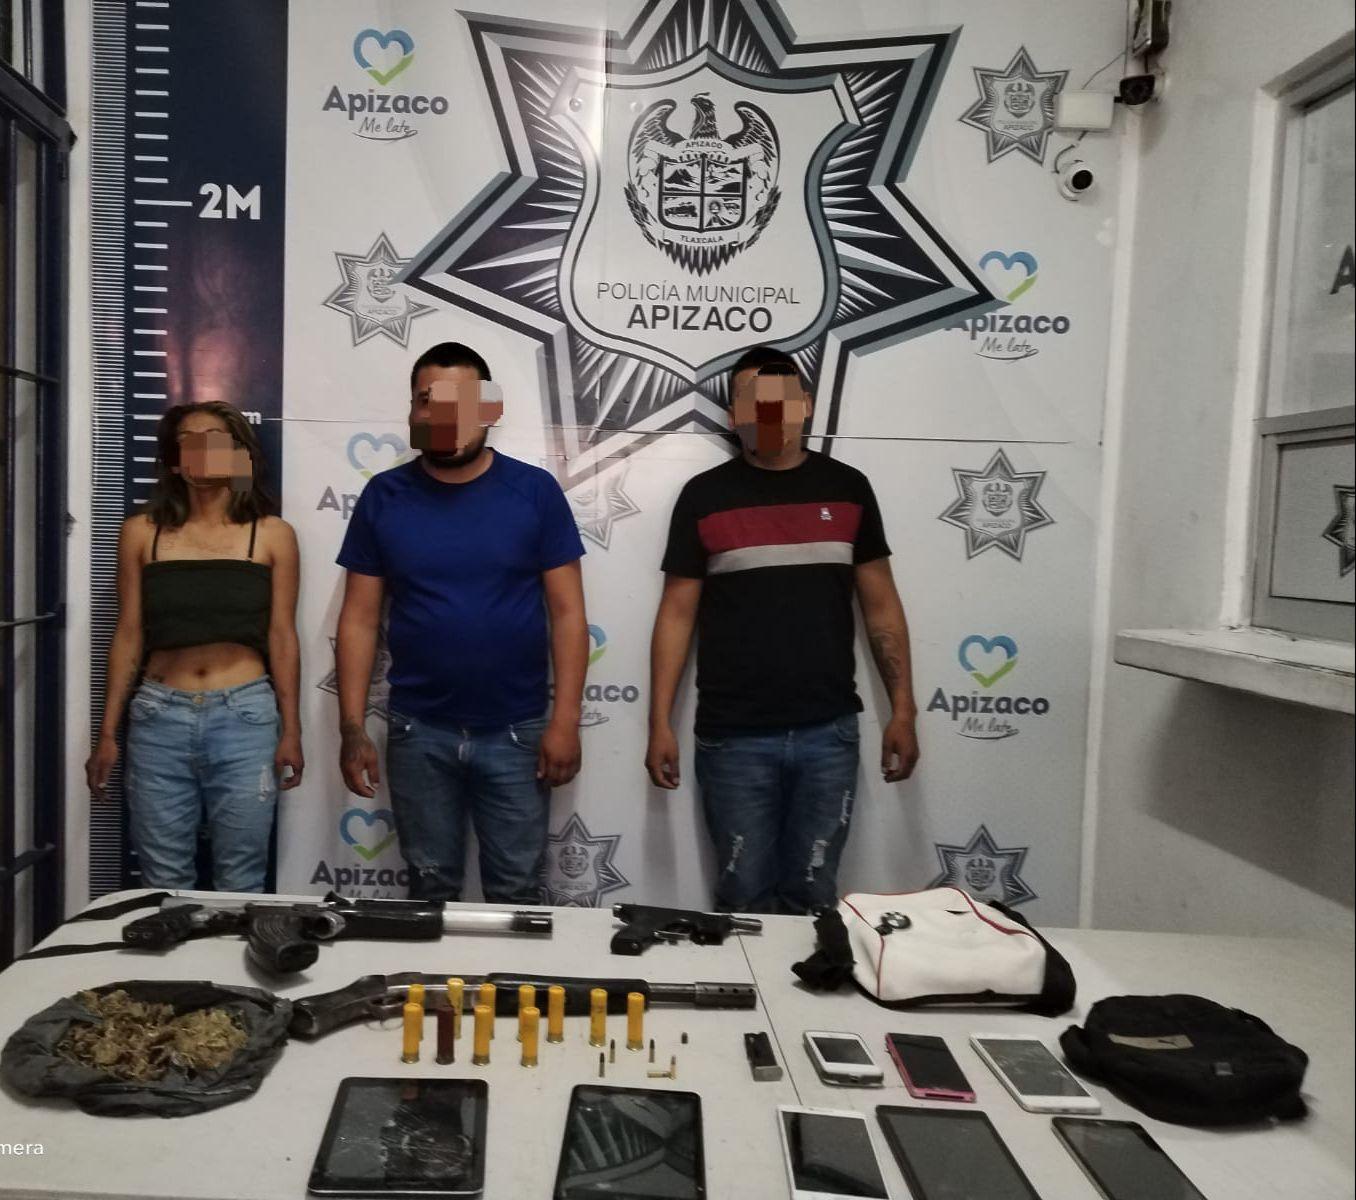 Desmantela Policia Municipal de Apizaco a banda delictiva: aseguraron armas, droga, cartuchos y una motocicleta